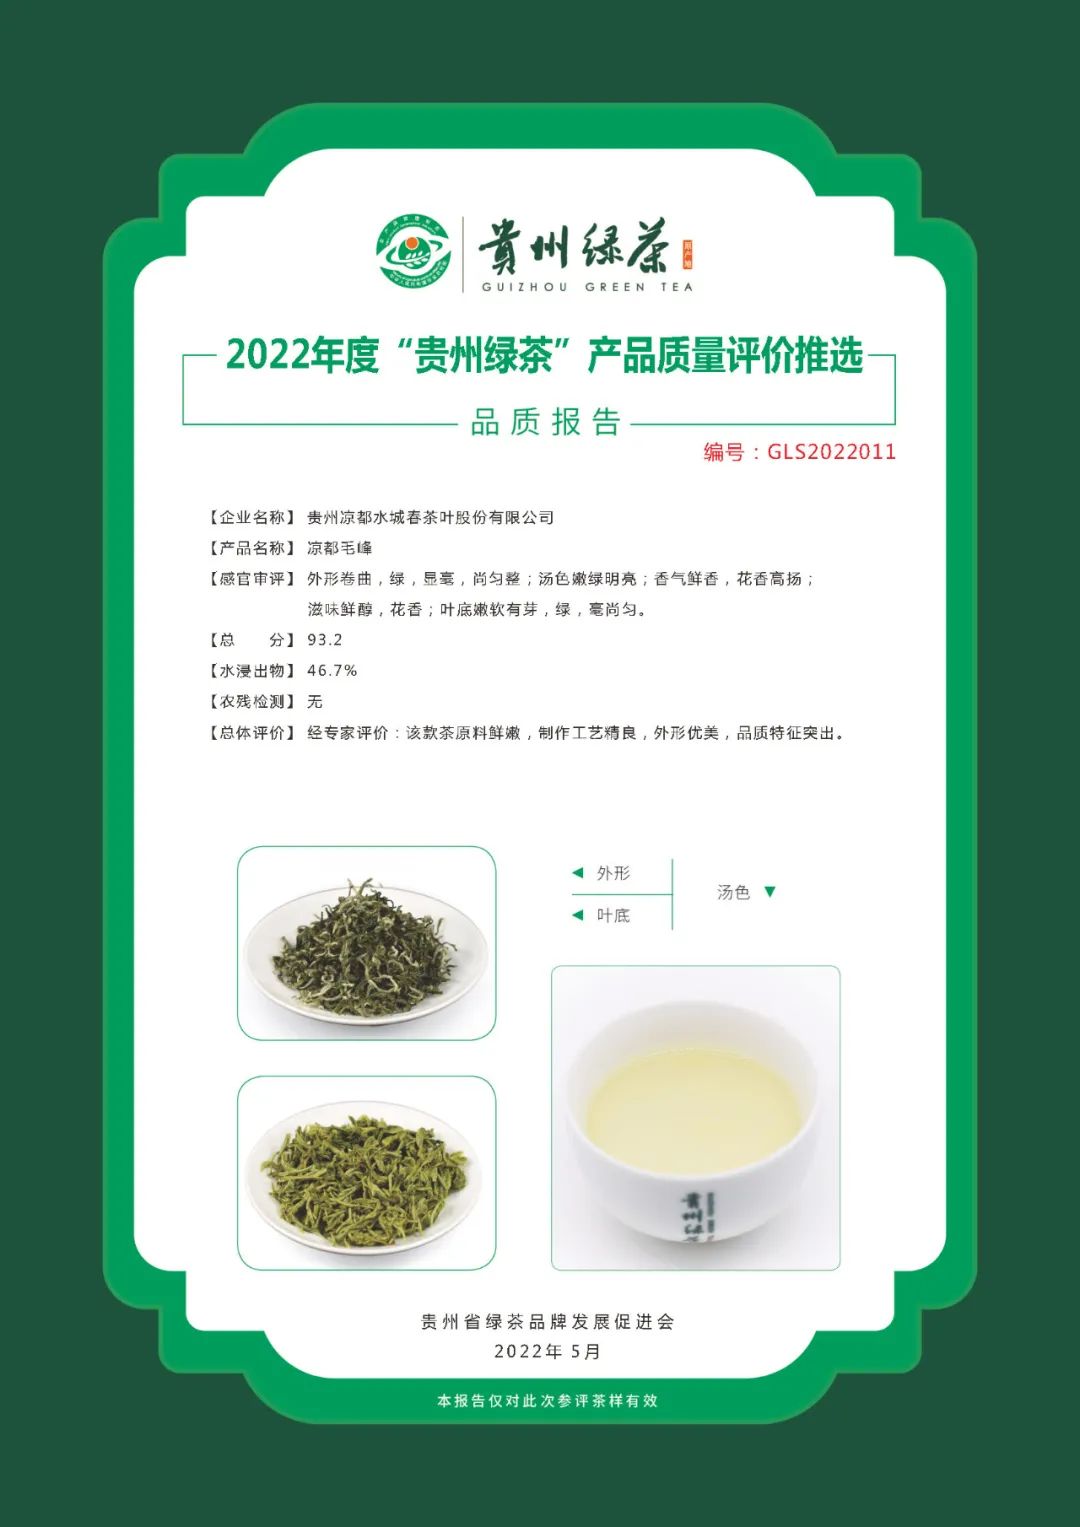 2022年“贵州绿茶”品质报告丨贵州凉都水城春茶叶股份有限公司